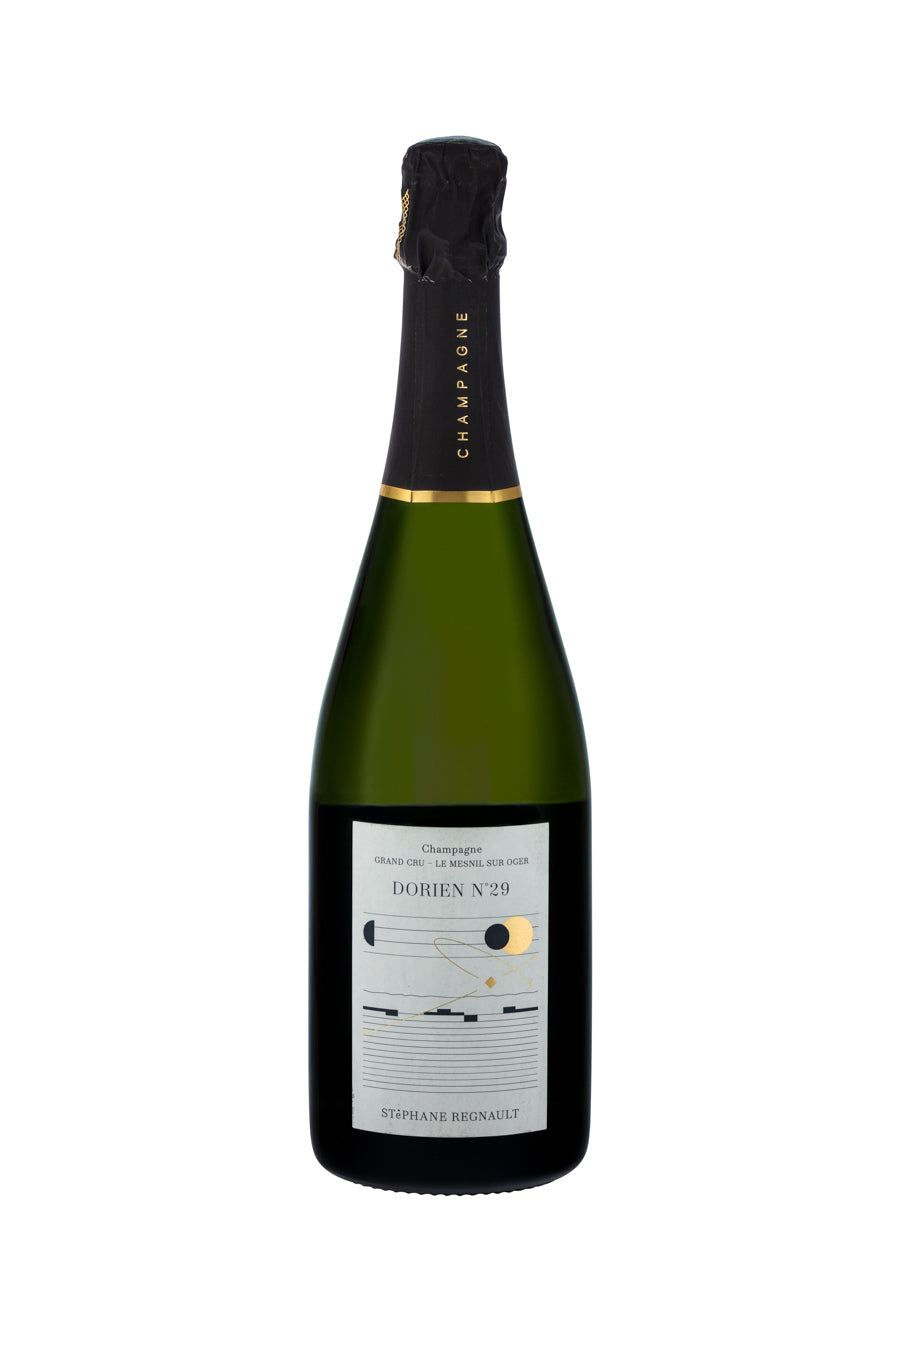 Champagne Stéphane Regnault, Grand Cru 'Dorien' No 29